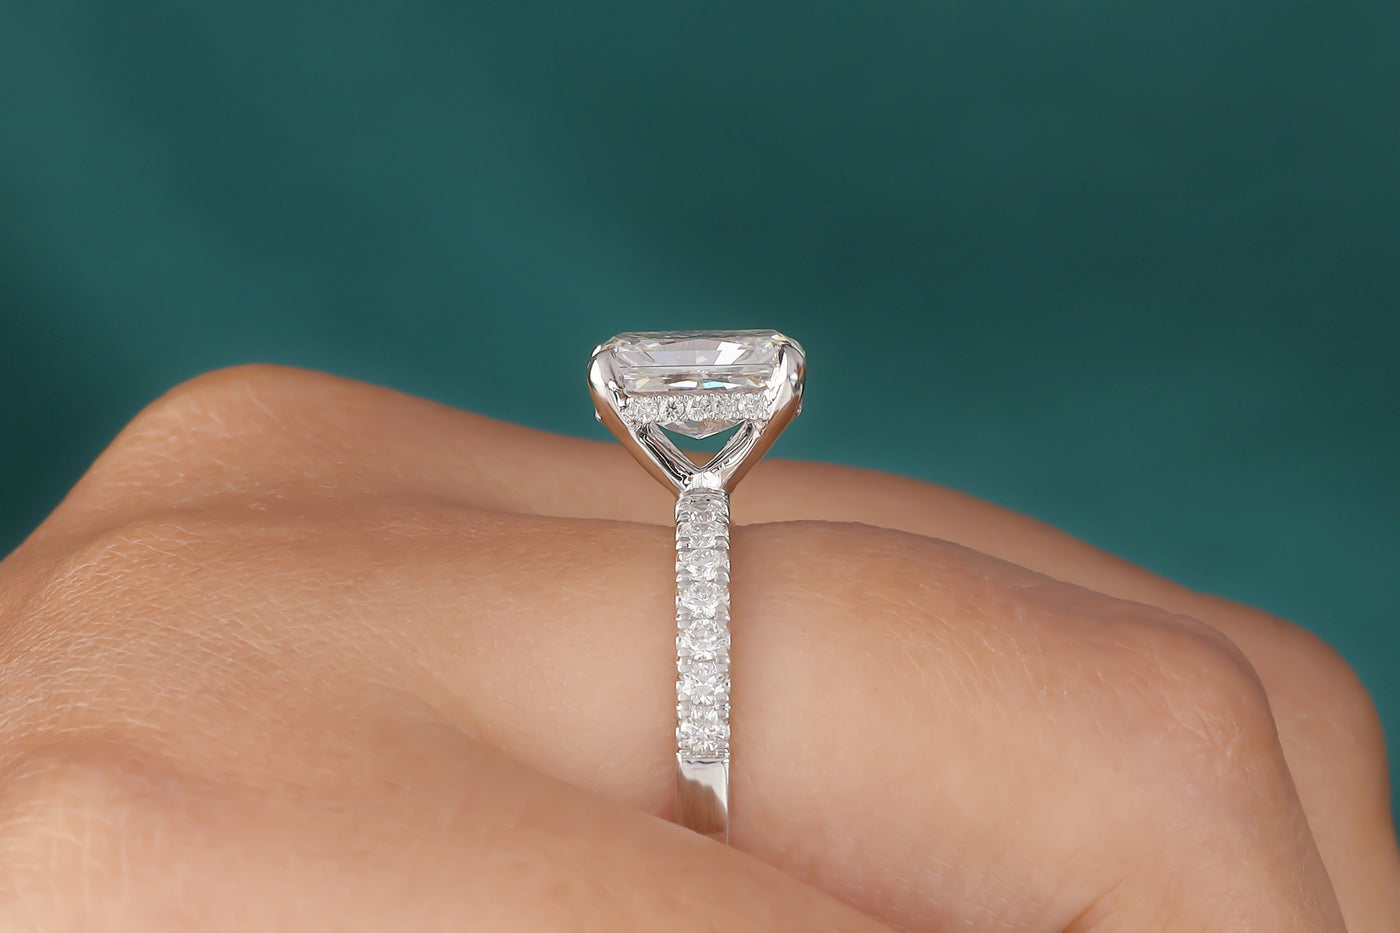 2.60 Ct Radiant Cut Moissanite Engagement Ring, Hidden Halo Moissanite Wedding Ring, Solid 14K White Gold Ring, Half Eternity Ring For Women